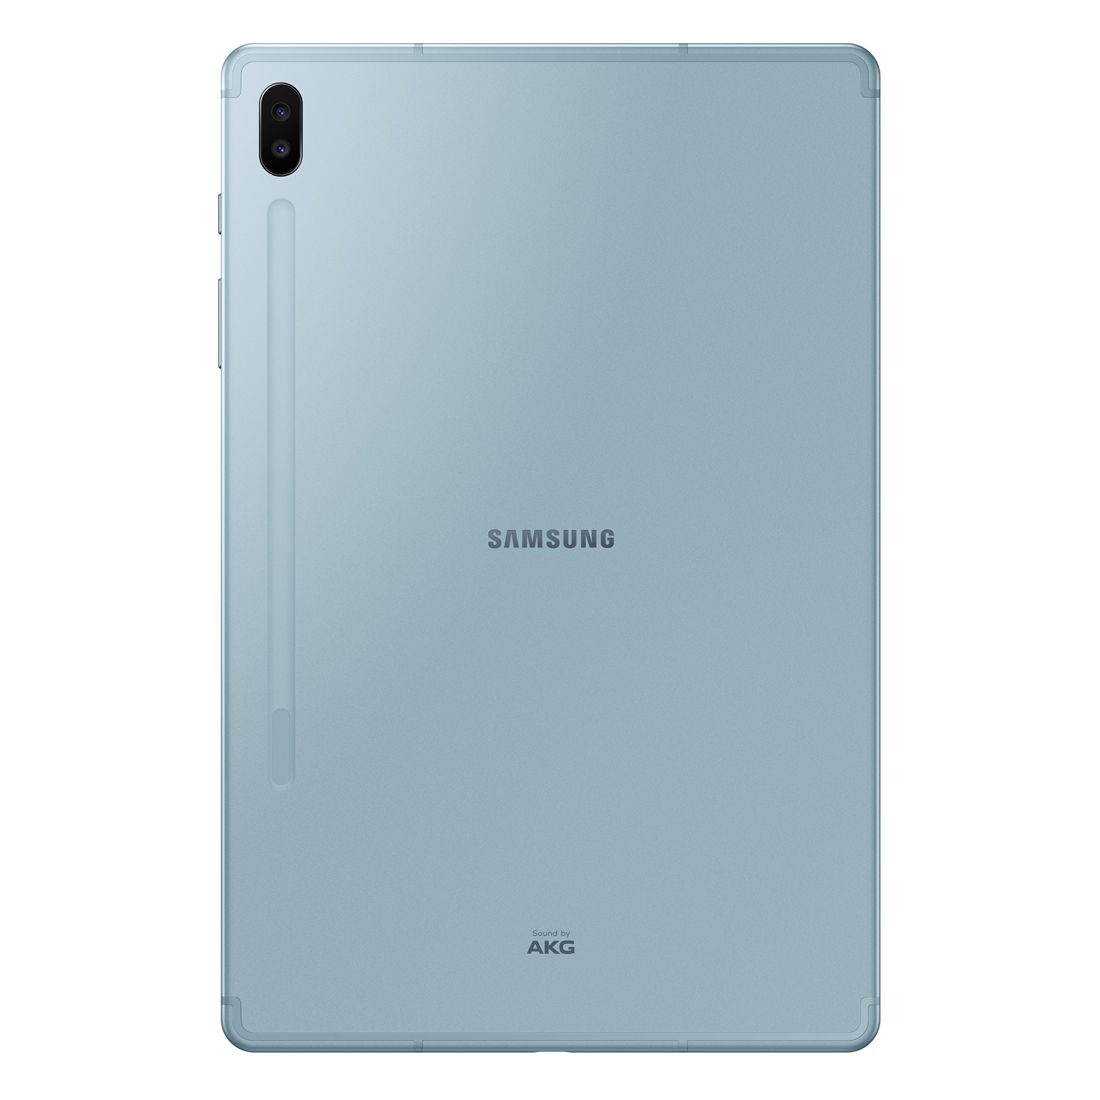 Samsung Galaxy Tab S6 (128GB/6GB, Wi-Fi + 4G with S-Pen) - Blue